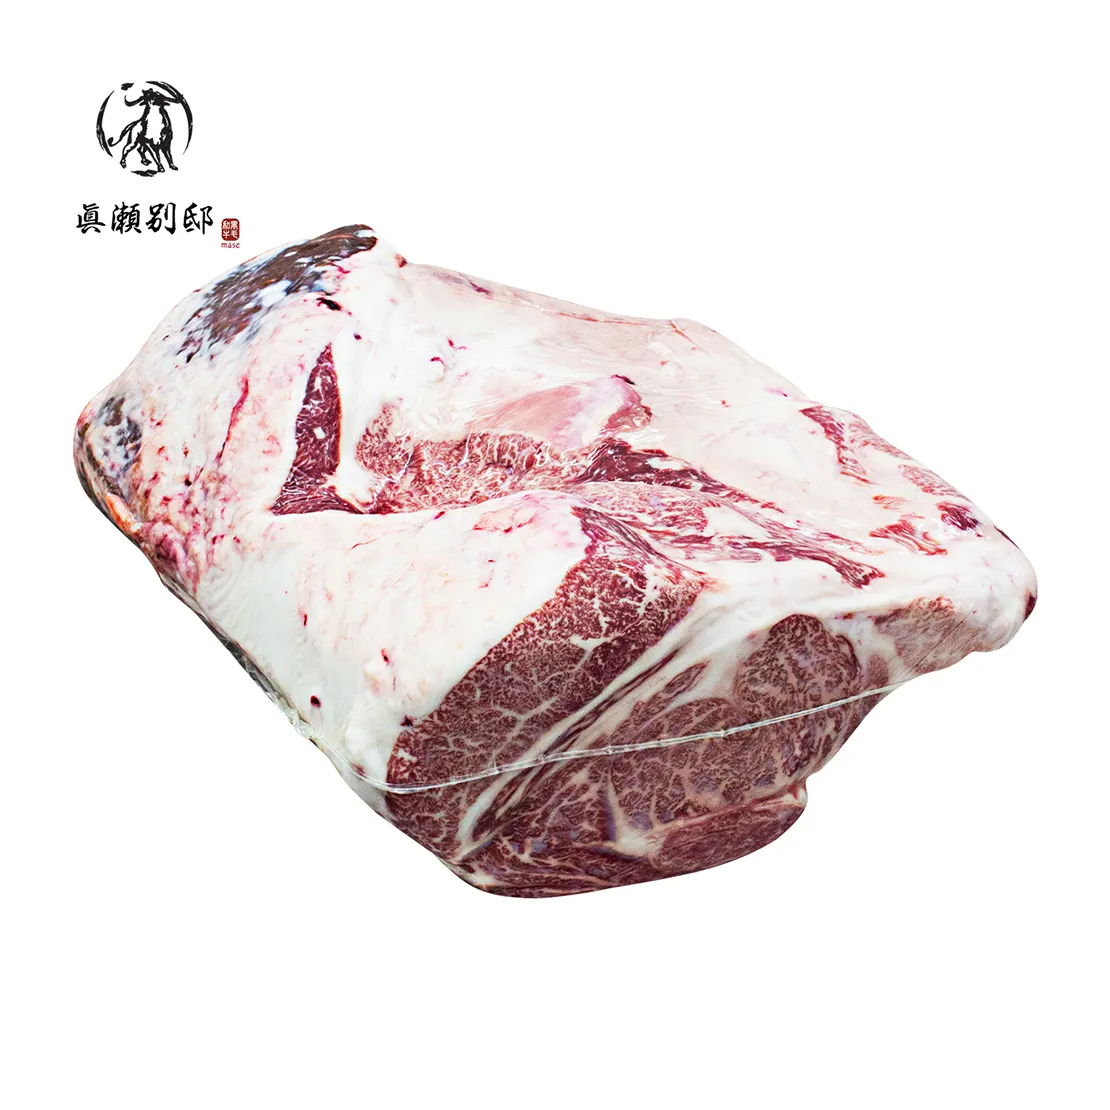 لفافات لحم فاخرة يابانية من الواجيوو عالية الجودة لحم بيضاوي طازج